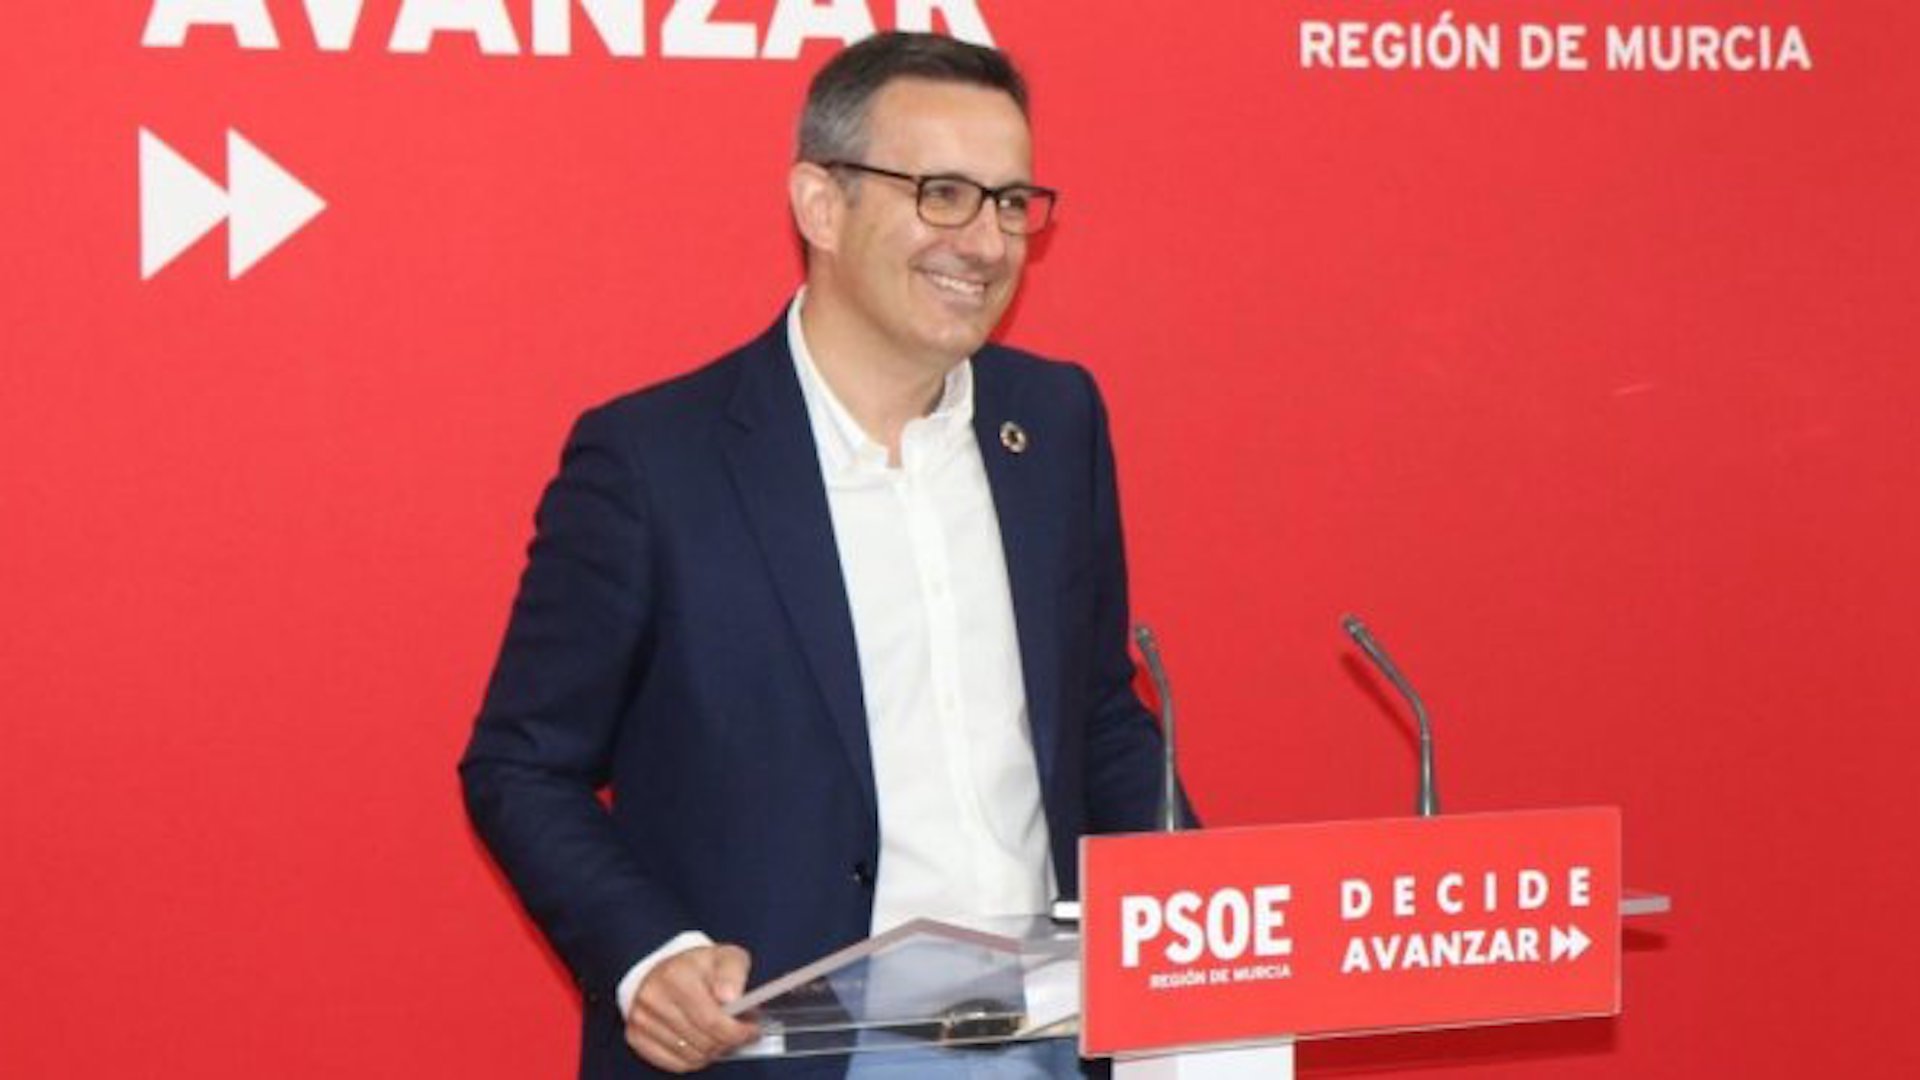 PSOE propone apoyar a Cs a la alcaldía de Murcia a cambio de la comunidad